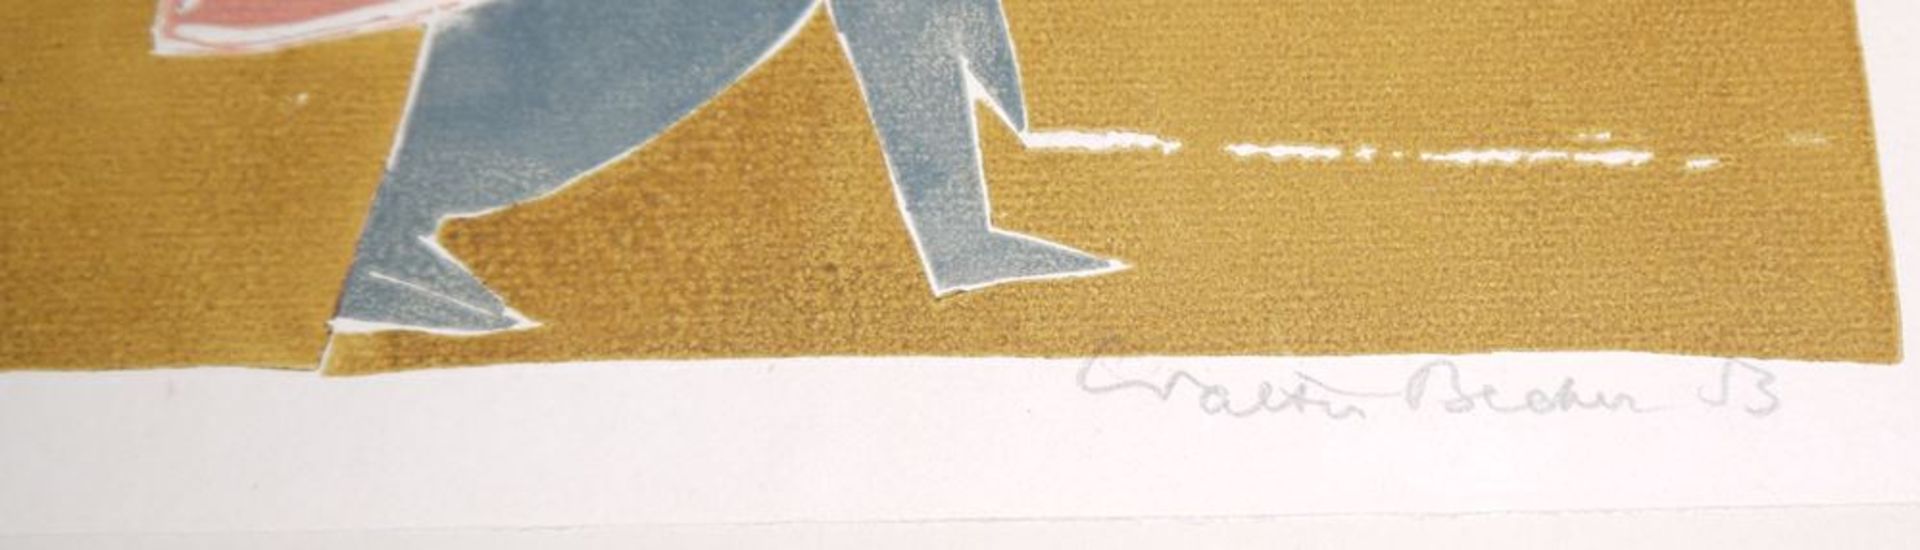 Walter Becker, Sammlungsnachlass, 7 signierte Monotypien und eine Farblithographie von 1953/54 - Bild 6 aus 6